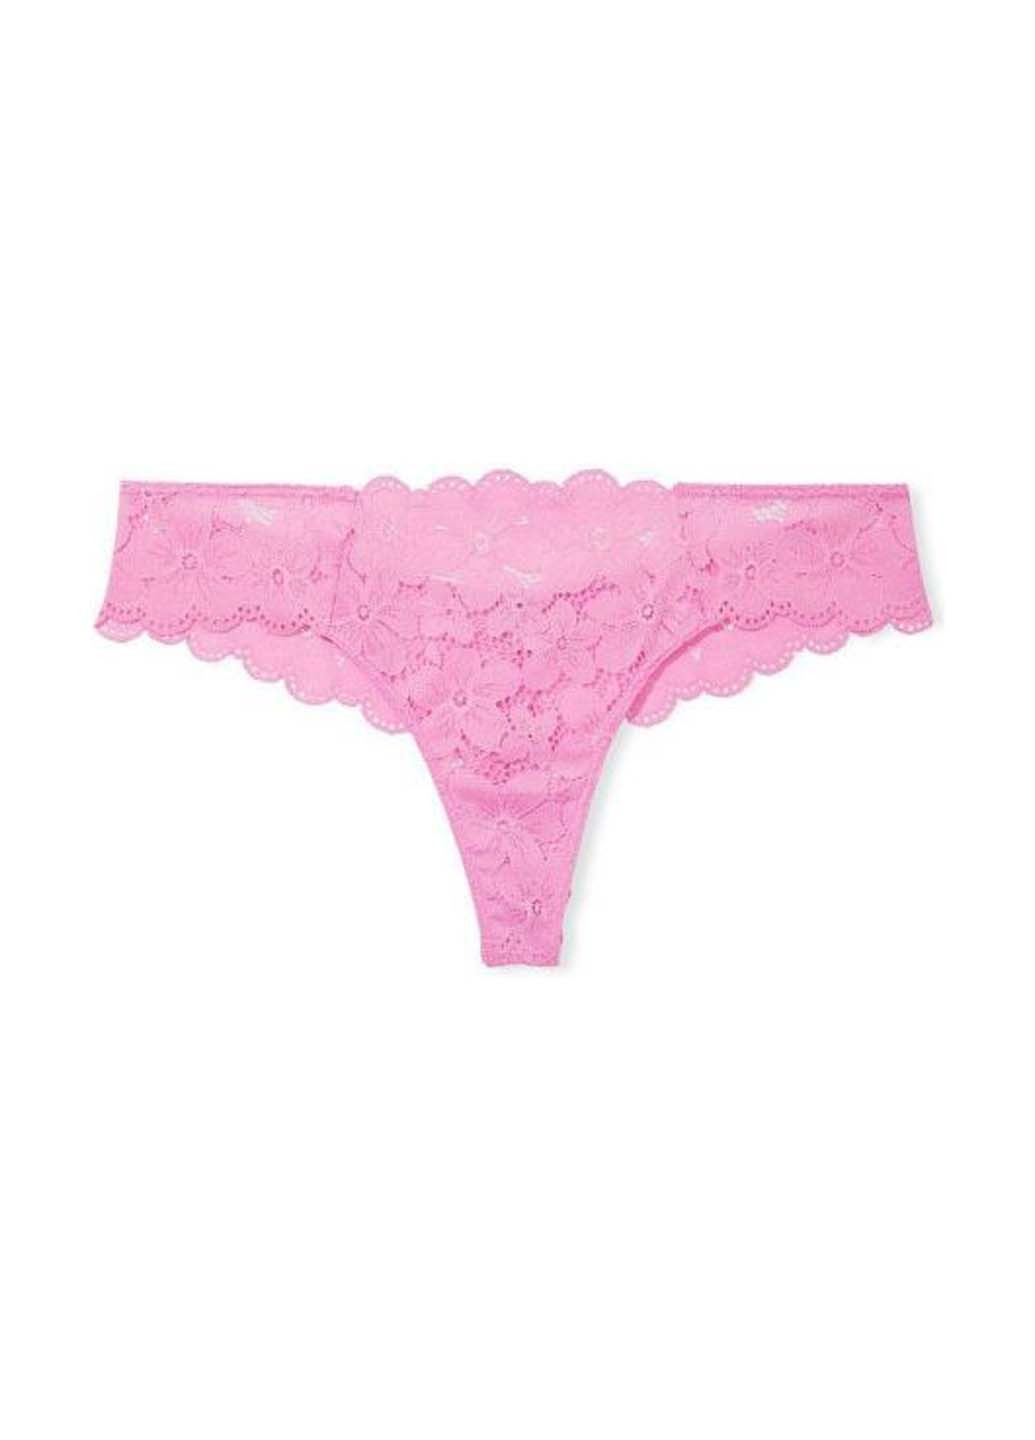 Рожевий демісезонний комплект (бюстгалтер, трусики) Victoria's Secret